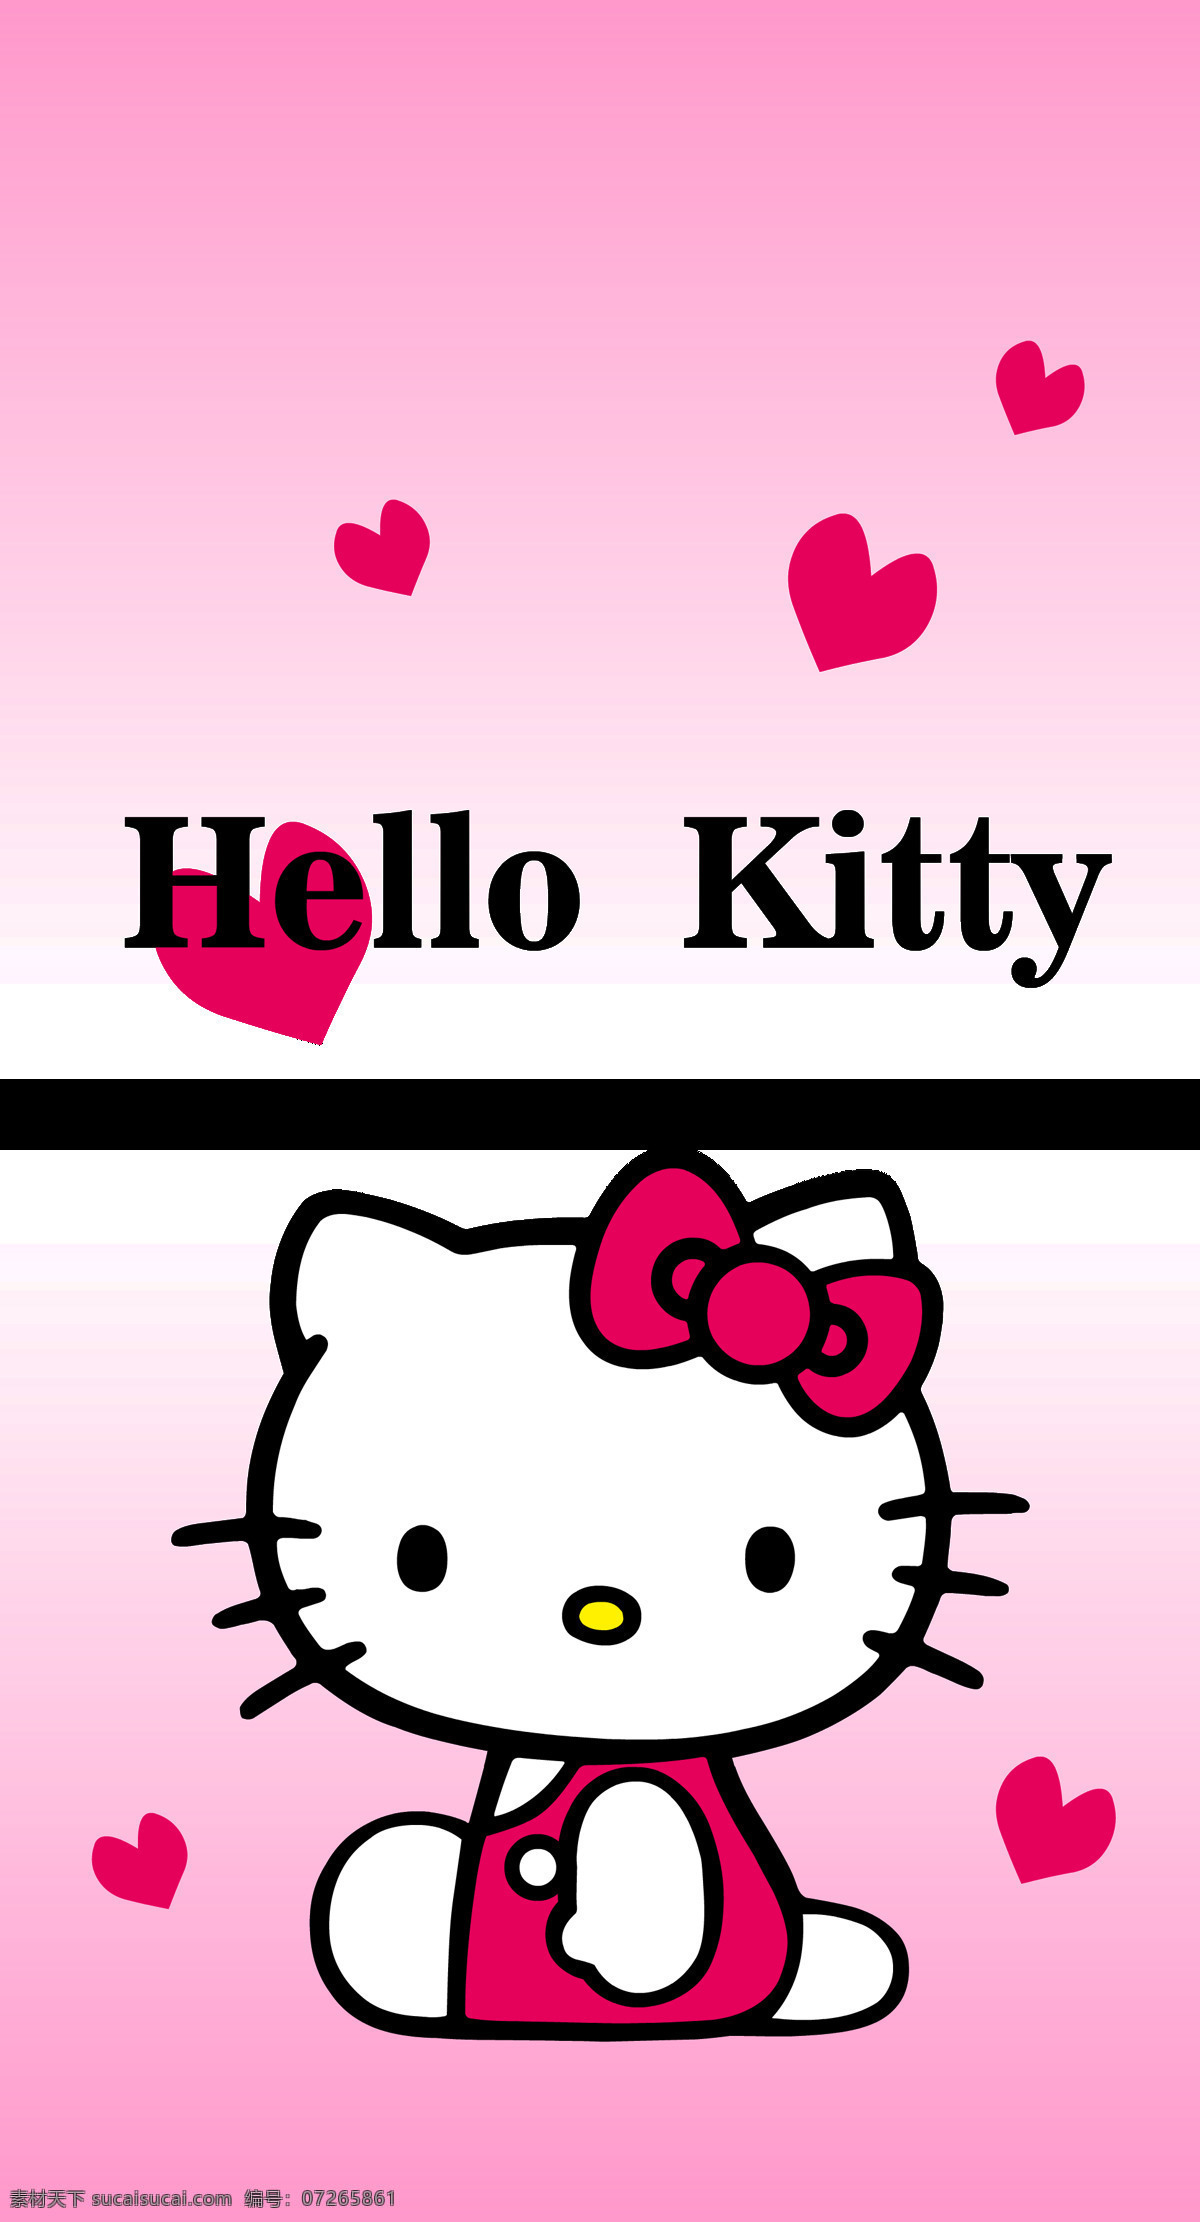 布纹 手机壳 图案 iphone 壁纸 背景 纹理 kitty猫 holly kitty 底纹边框 背景底纹